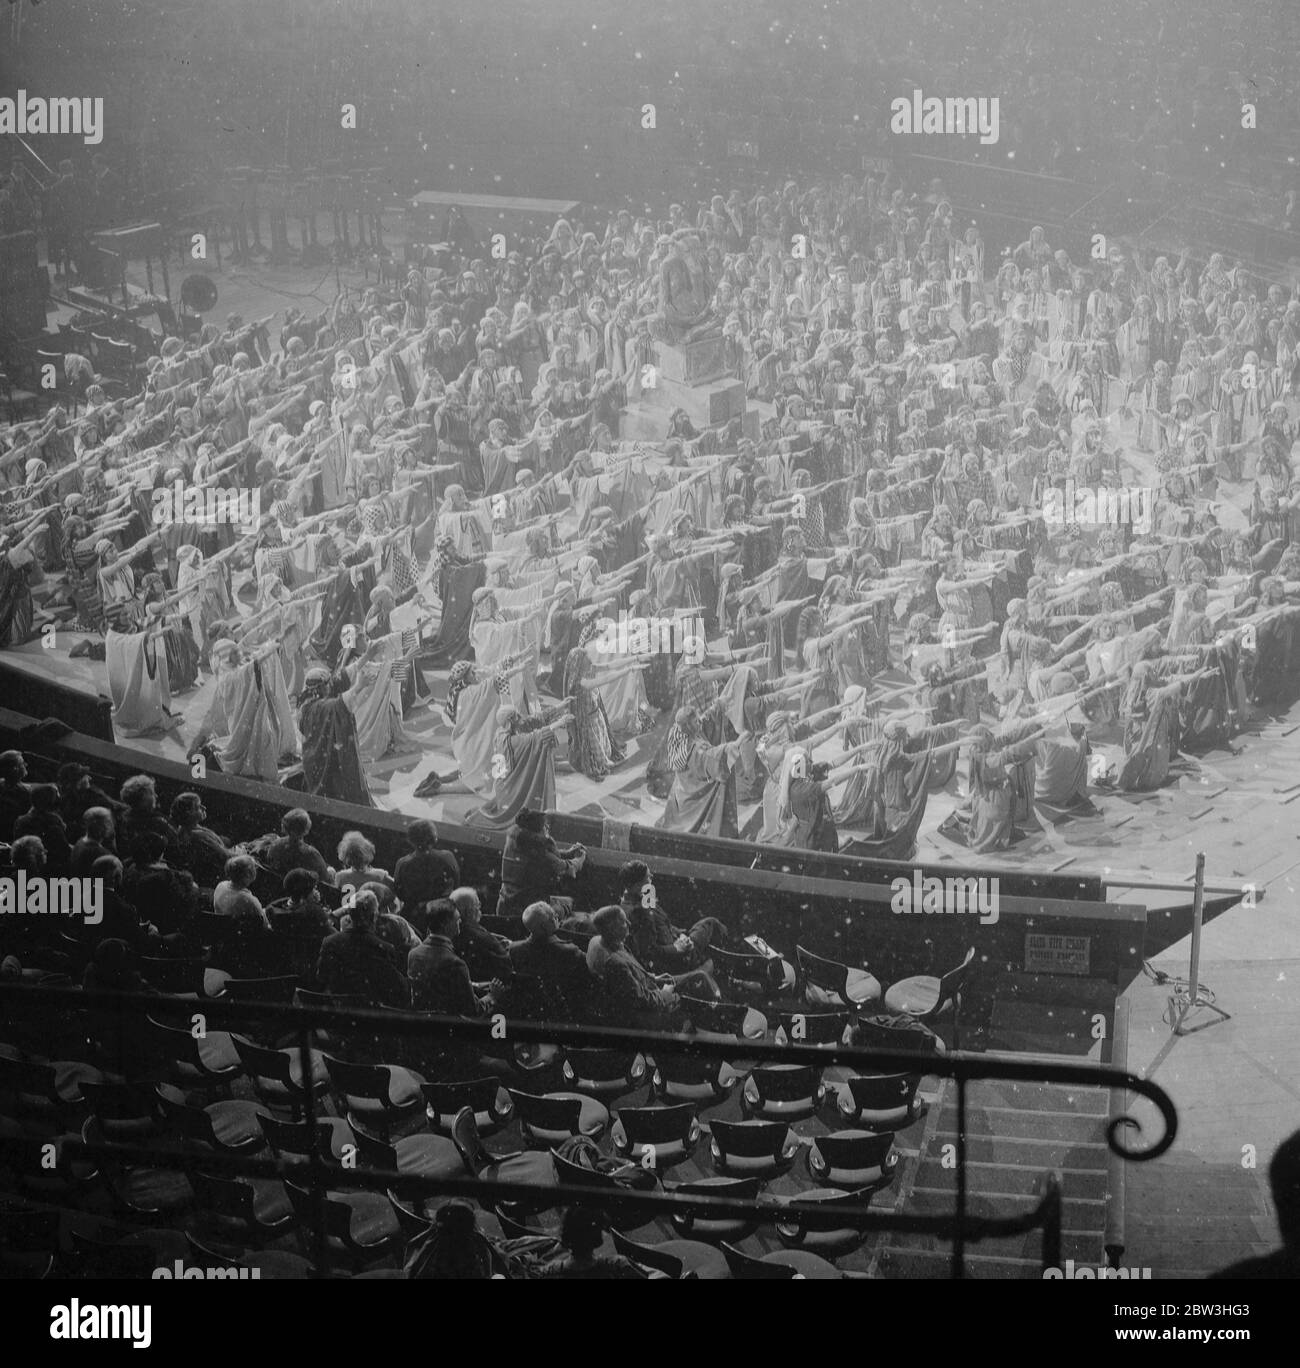 Generalprobe von Mendelssohn 's Elijah in der Albert Hall, London. Tausend Choristen in einem beeindruckenden Schauspiel. Herr Henry Gill als Elijah ist im Zentrum. 10 Februar 1935 Stockfoto